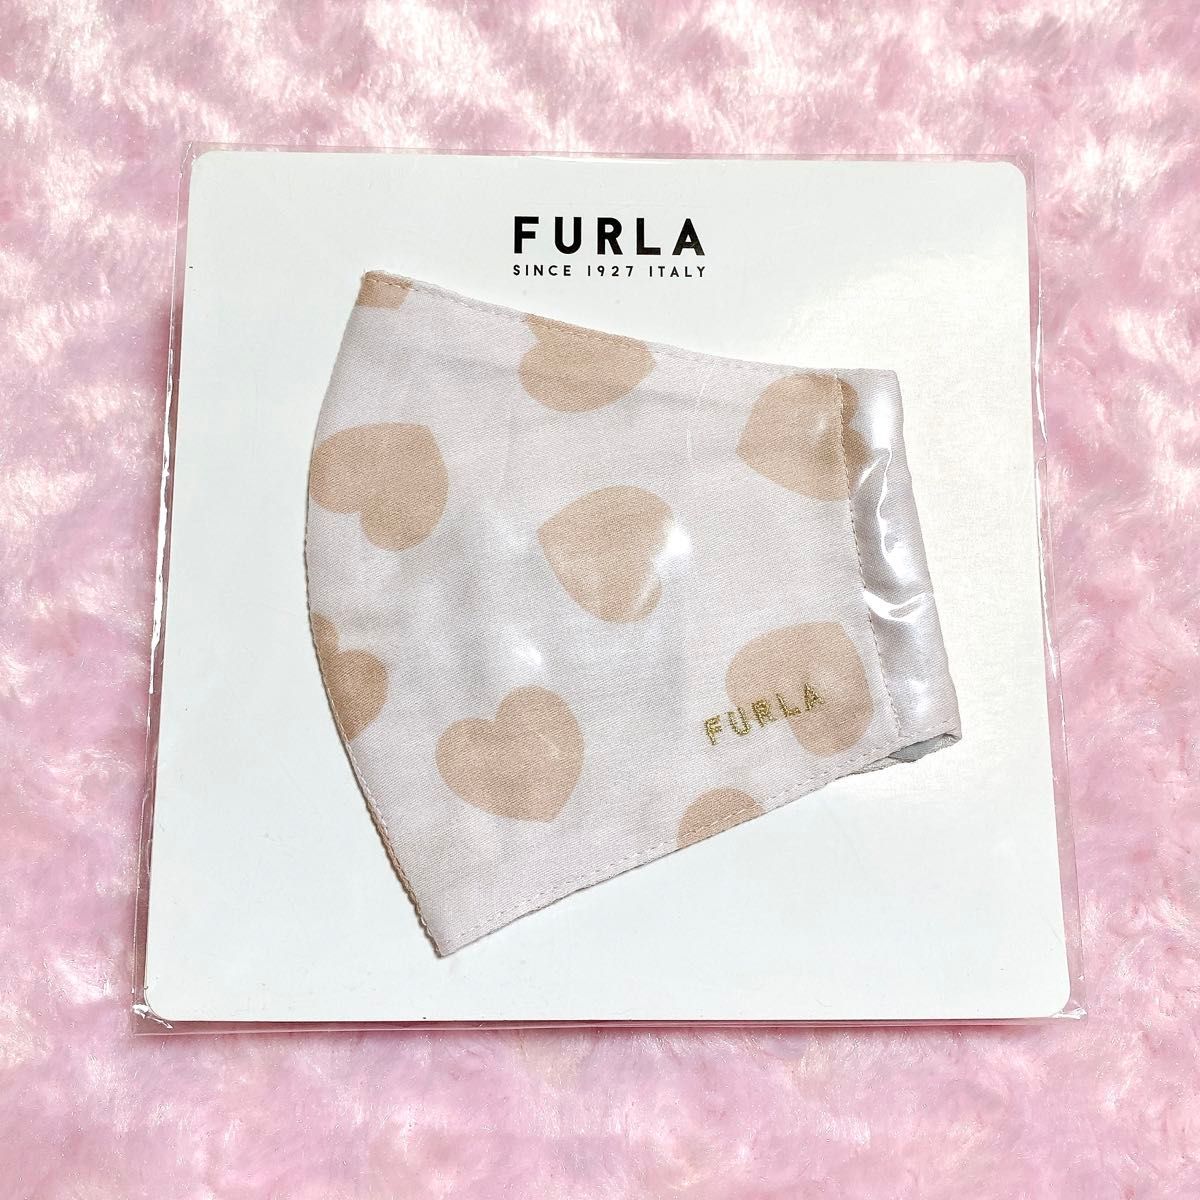 FURLA フルラ マスク ブランド 刺繍 ロゴ ハート 立体マスク 百貨店